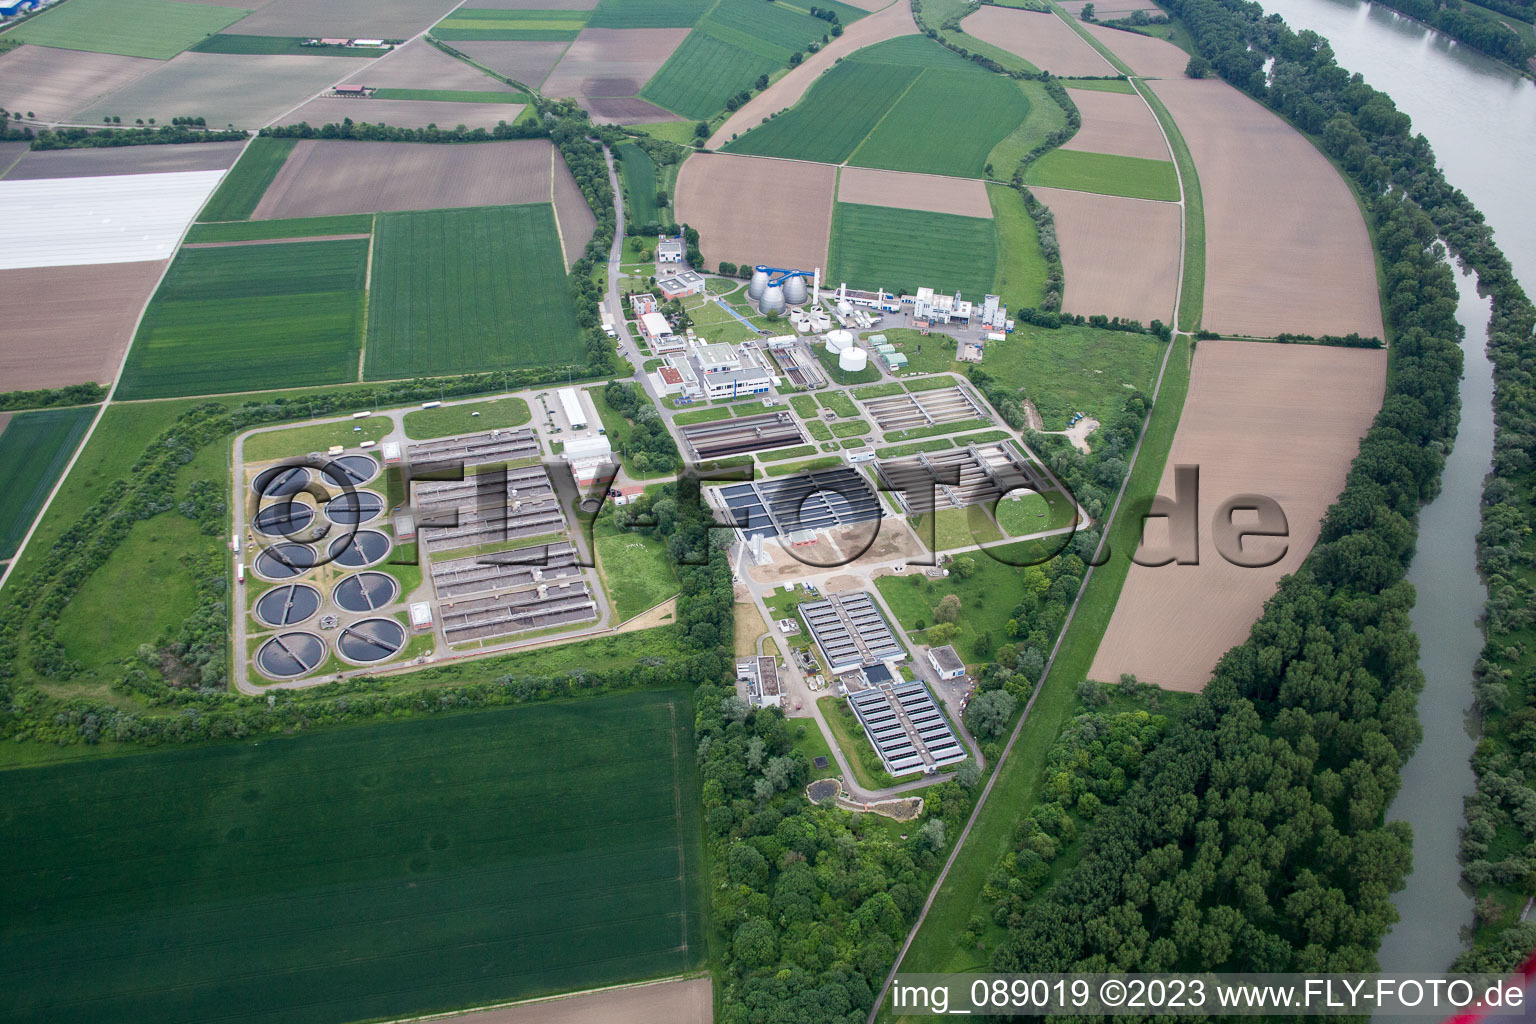 Vue aérienne de Usine de traitement des eaux usées de drainage urbain à le quartier Sandhofen in Mannheim dans le département Bade-Wurtemberg, Allemagne